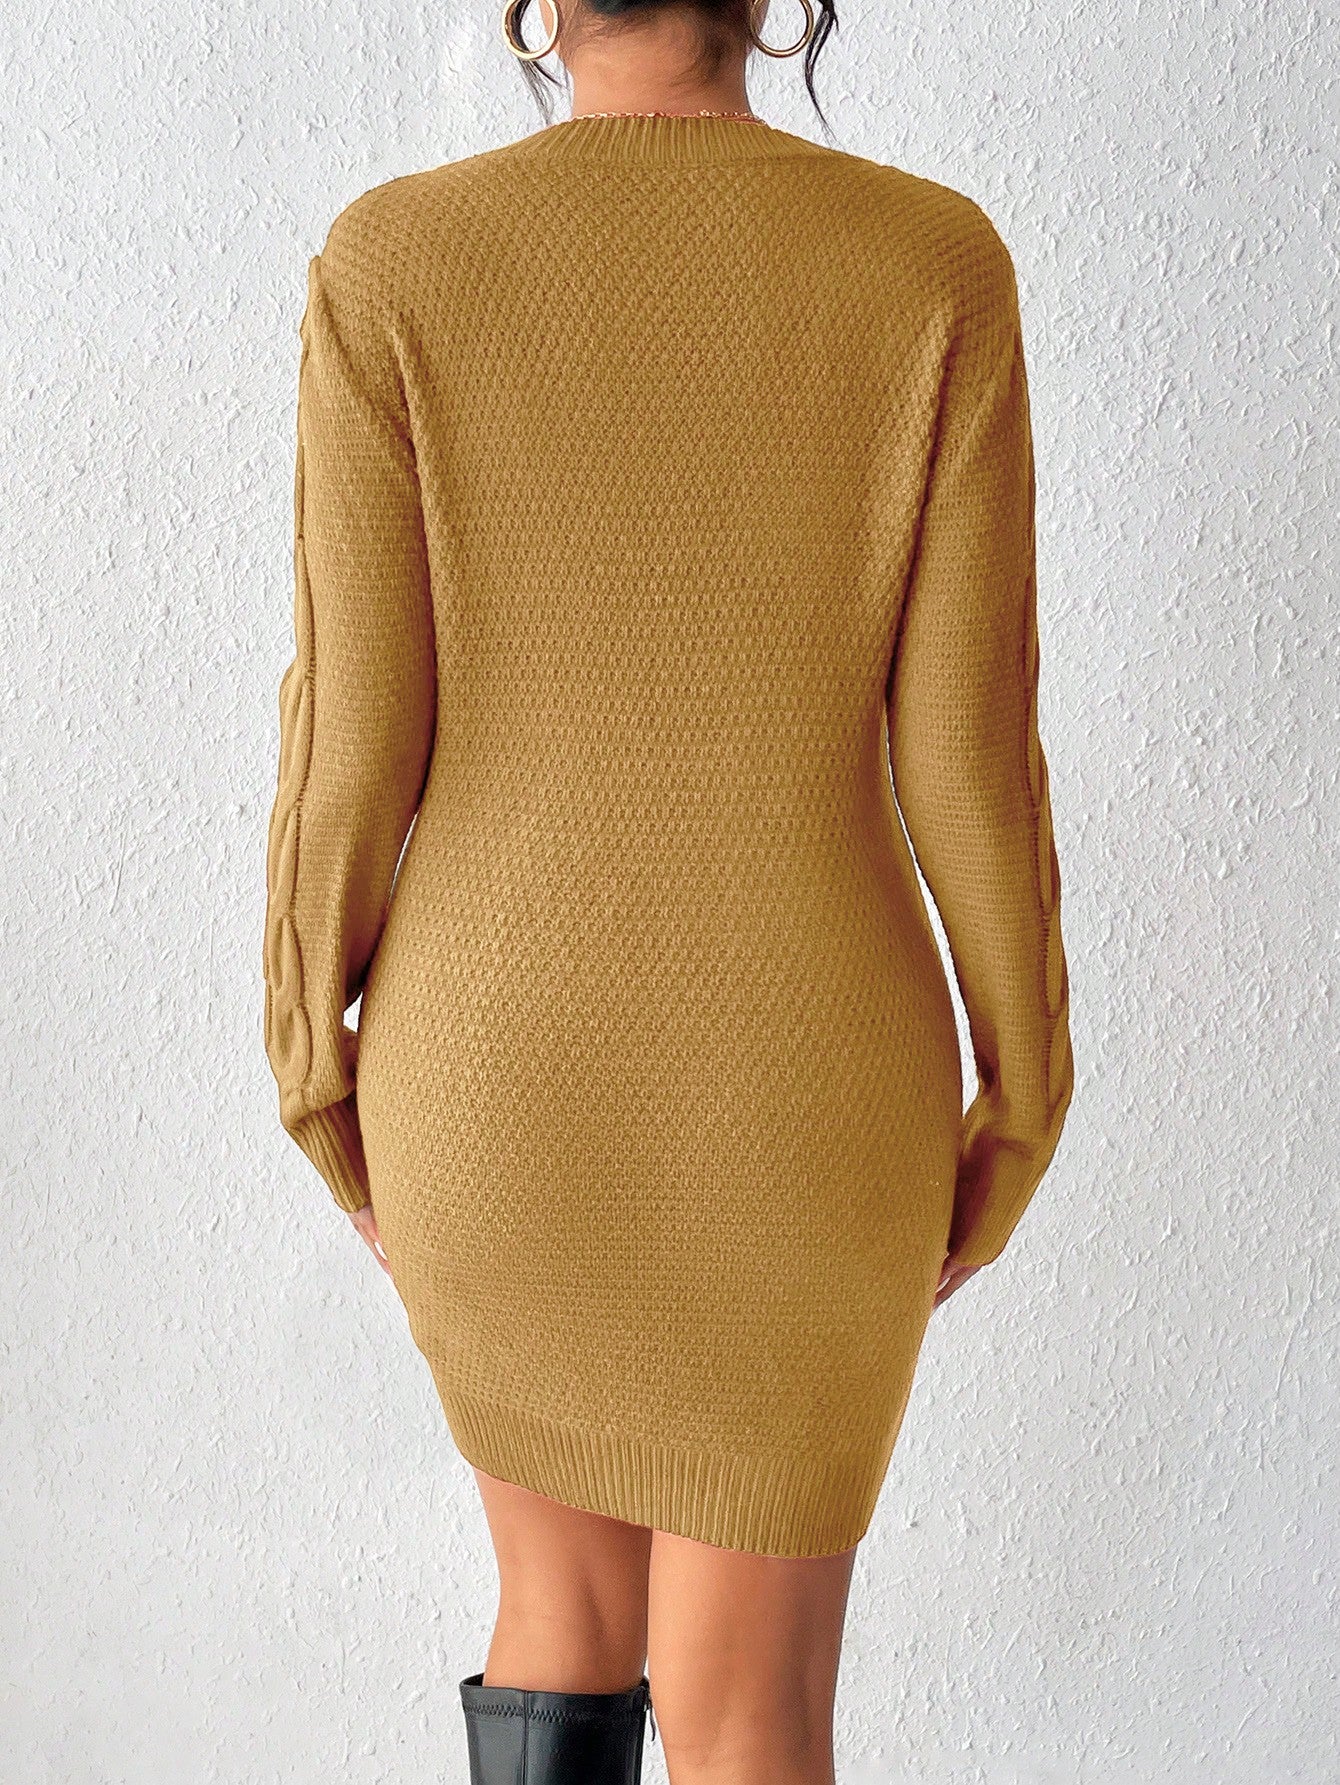 Essnce Women's Twist Knit Sweater Dress